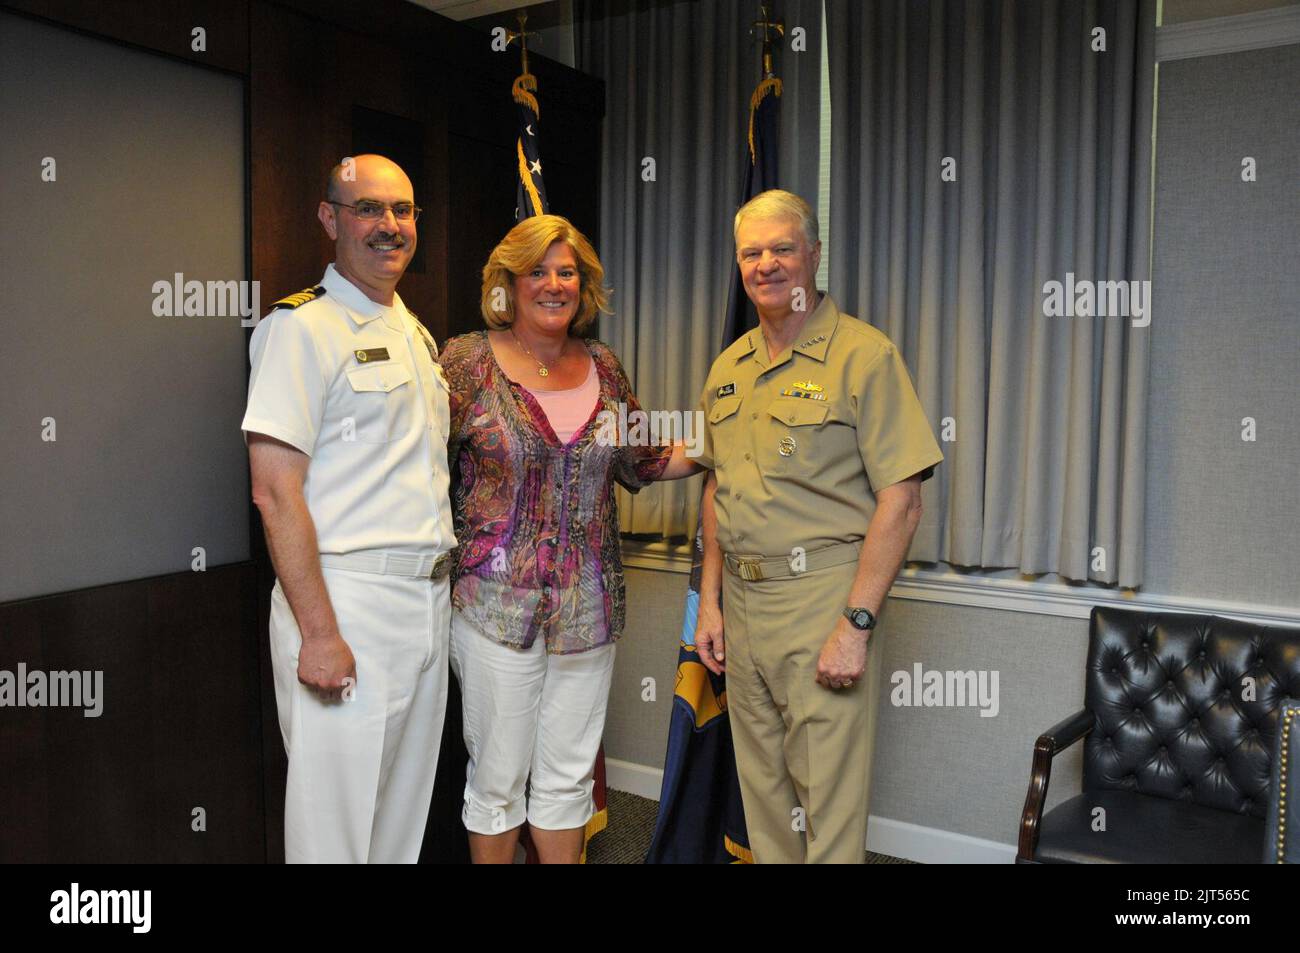 Chef des opérations navales des États-Unis SMA. Gary Roughead, à droite, pose pour une photo avec un USS John C. Stennis leadership Award, à gauche, et invité lors de leur visite au Pentagone à Arlington, va 110708 Banque D'Images